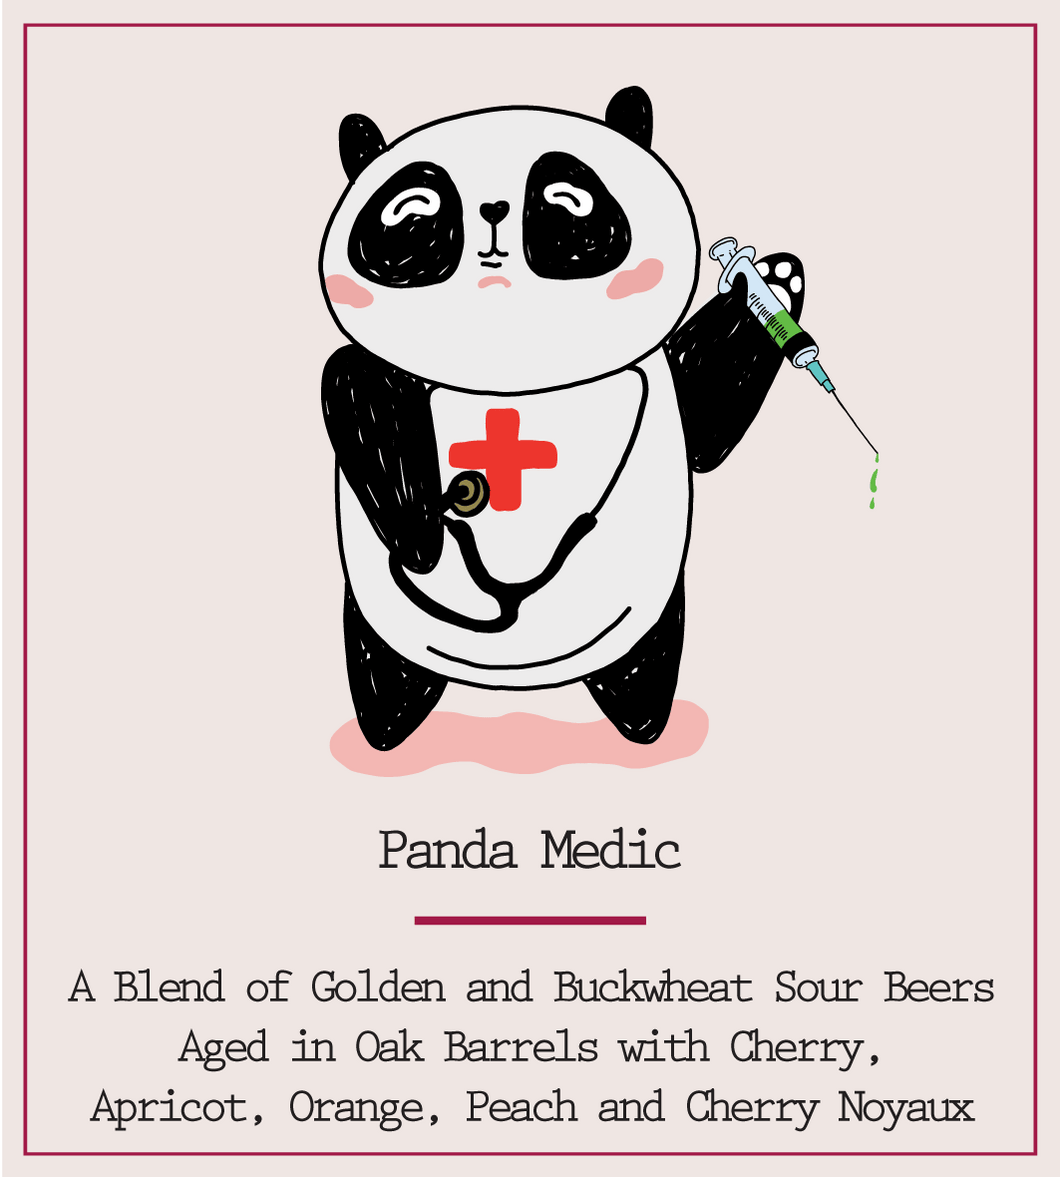 Panda Medic